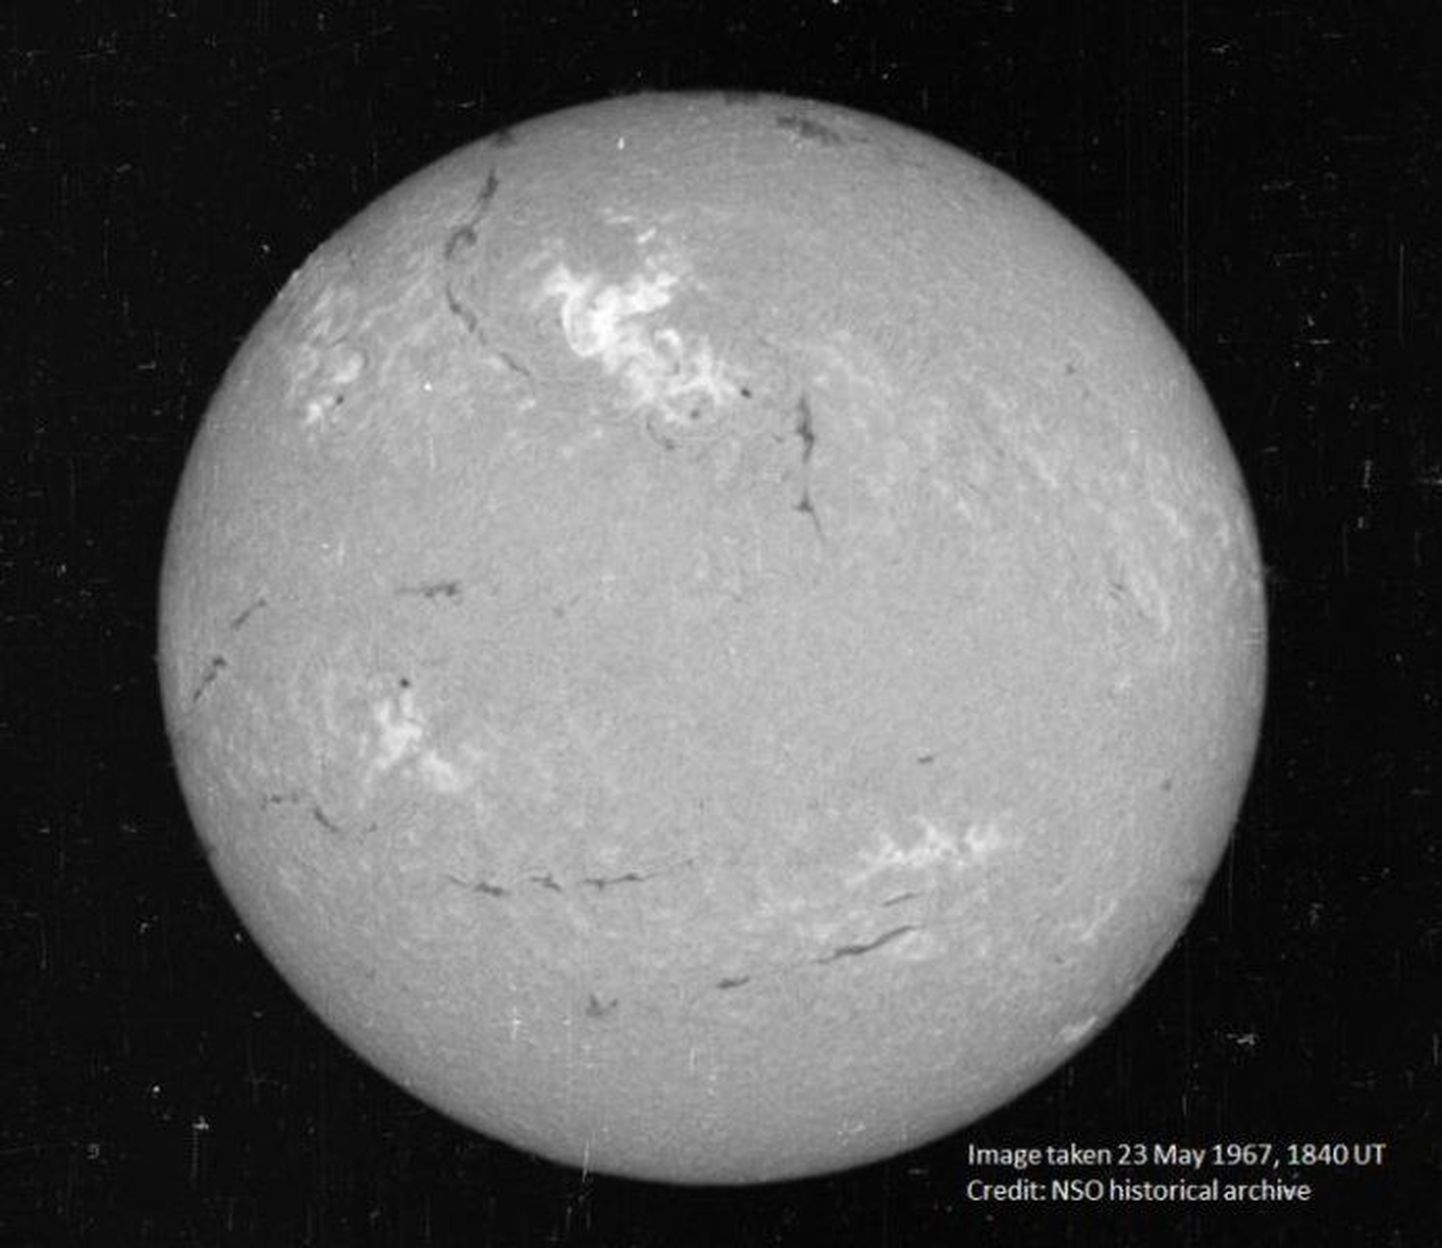 USA kosmoseilma uurivate teleskoopide pilt Päikesest pea saatuslikuks osutunud 23. juulil 1967. Heledamal alal pildi keskpaiga kohal paistab leekides ala, kust ka päikesetorm alguse sai.